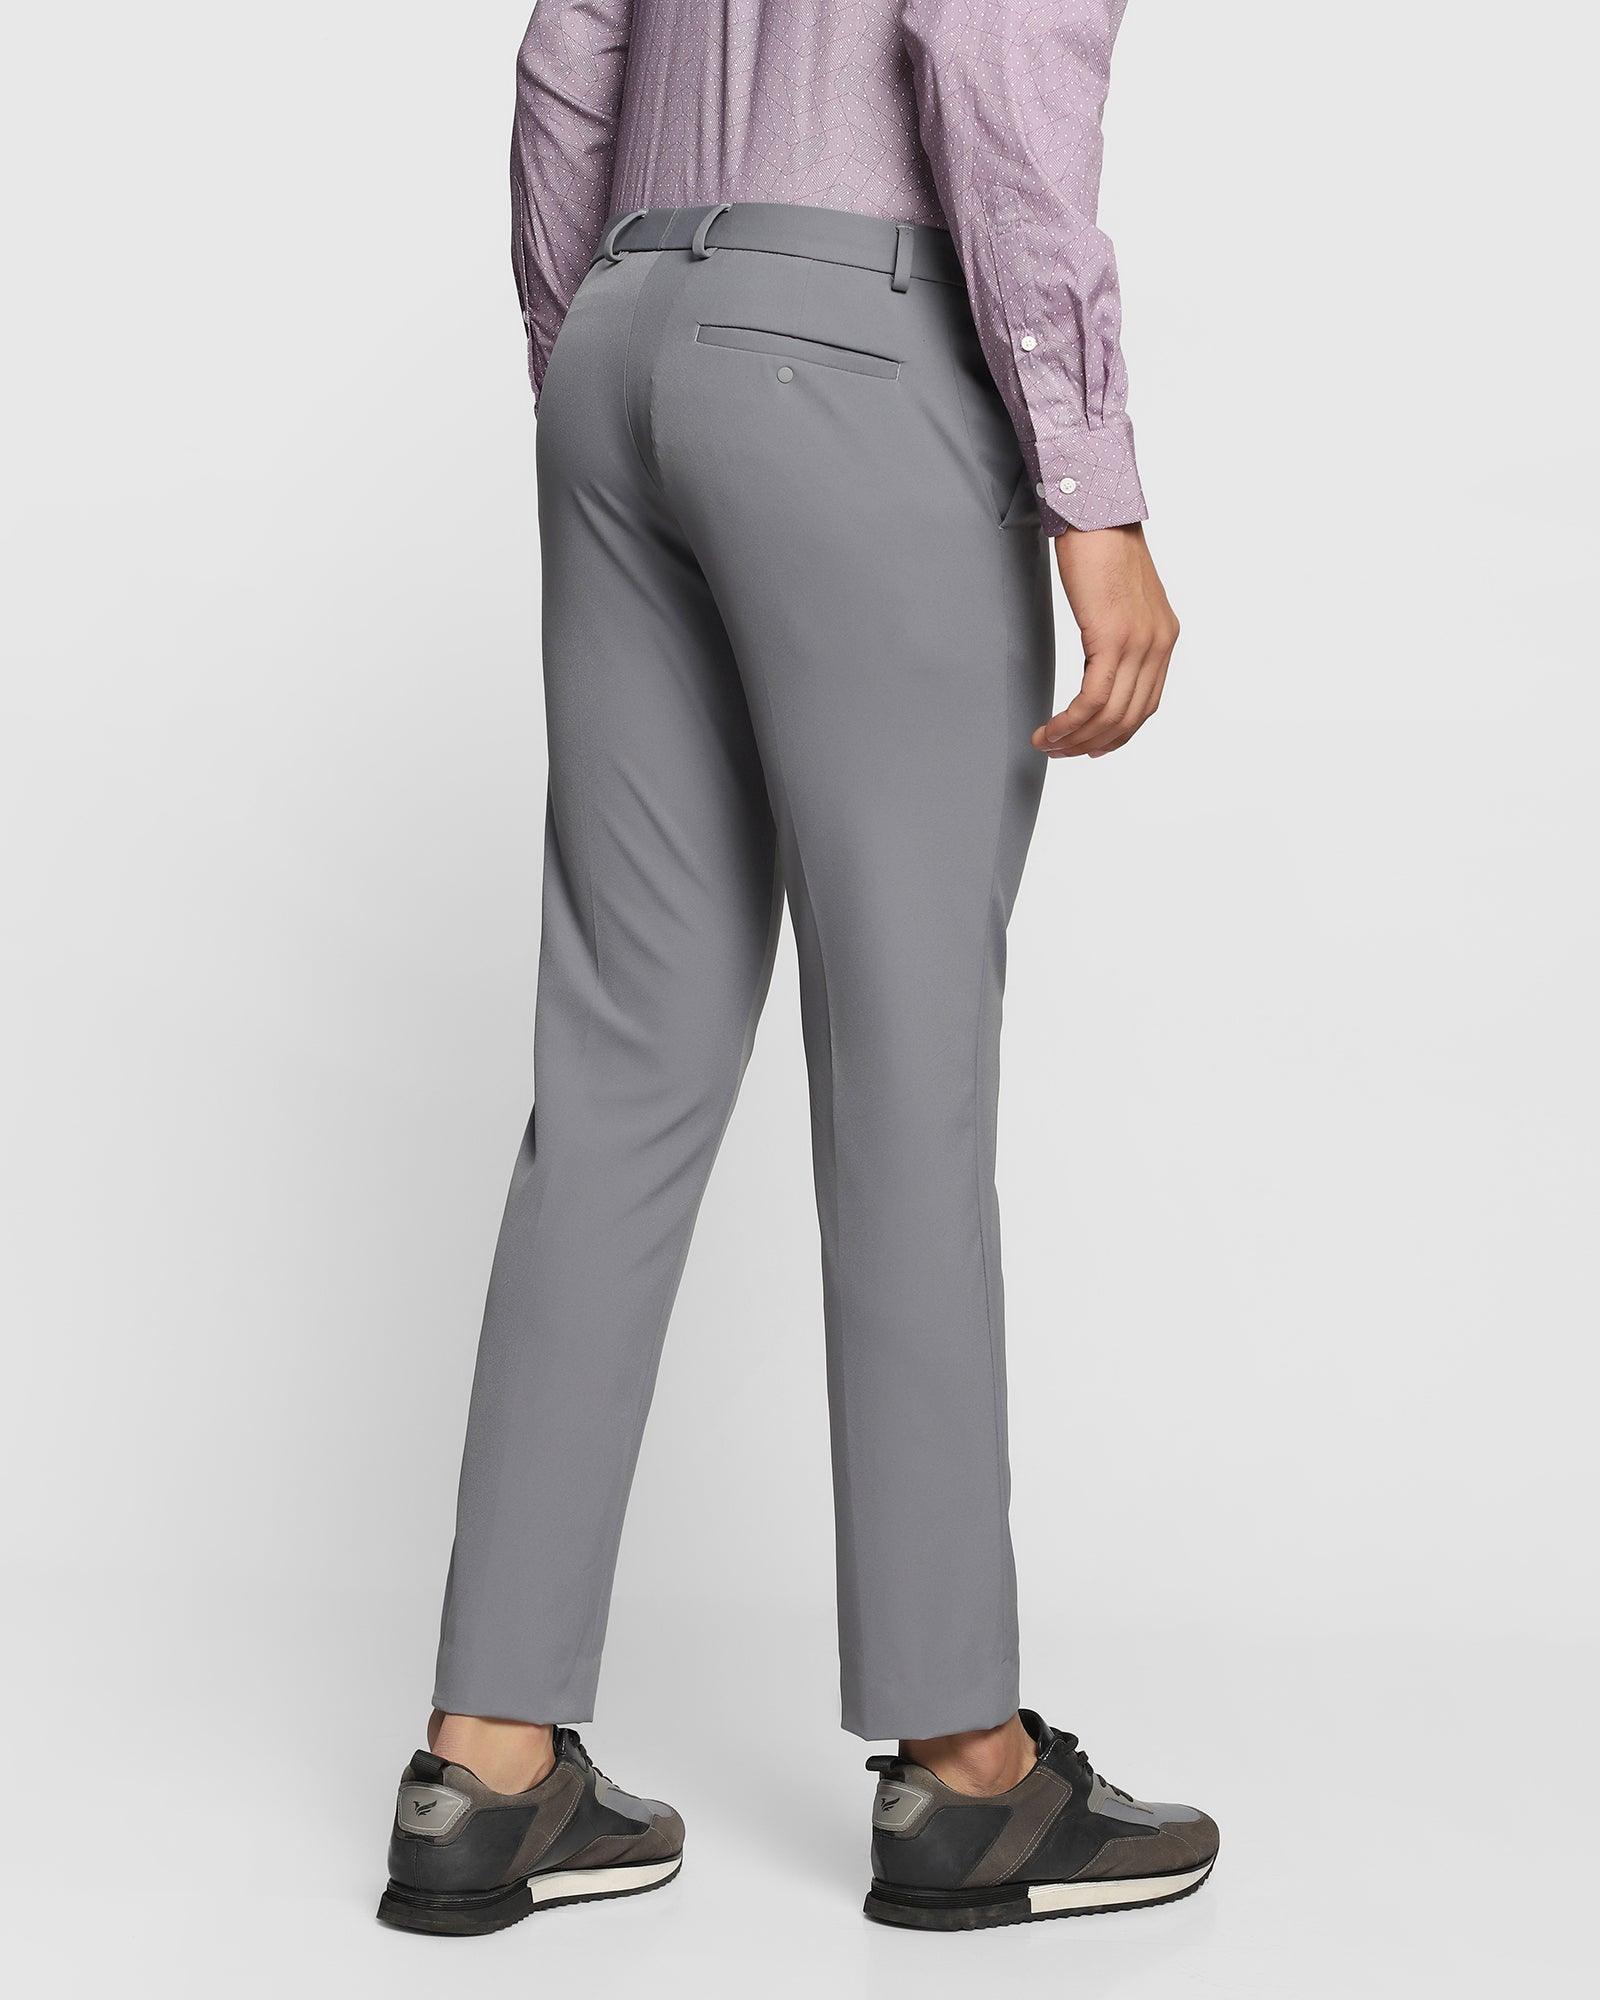 techpro formal trousers in grey b 91 filsey blackberrys clothing 2